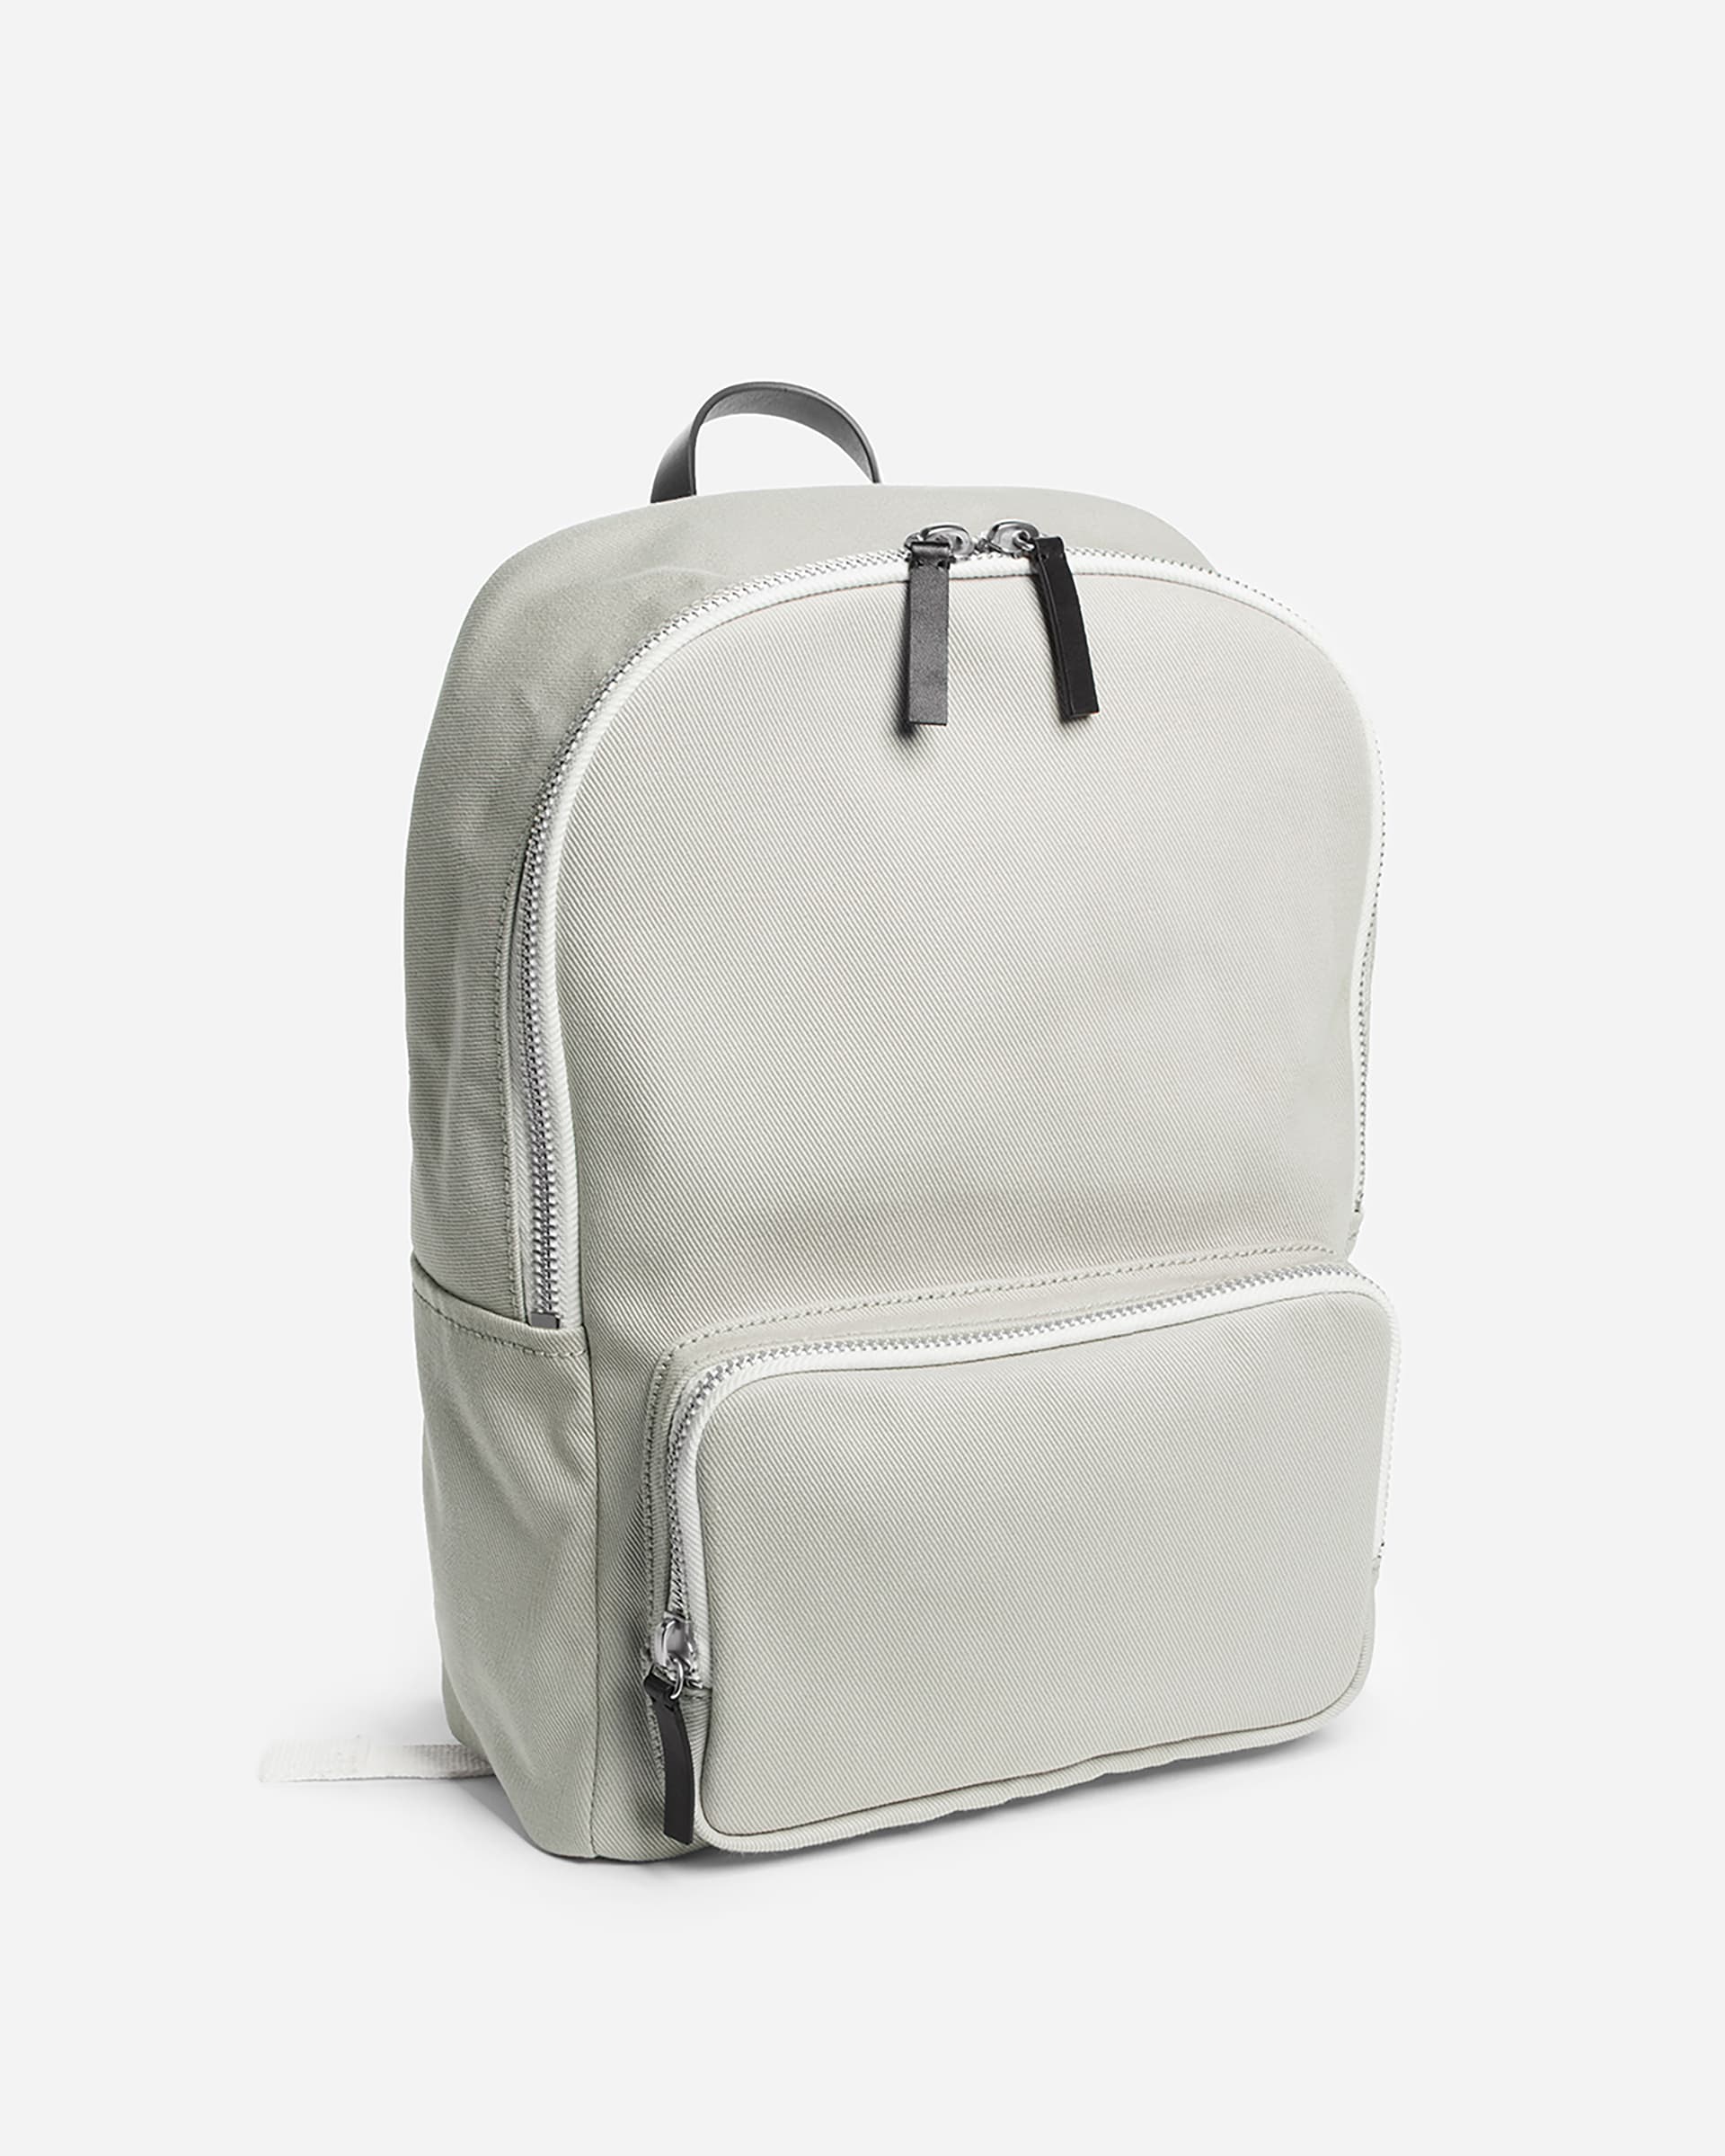 The Modern Zip Backpack - Mini Stone + Black Leather – Everlane